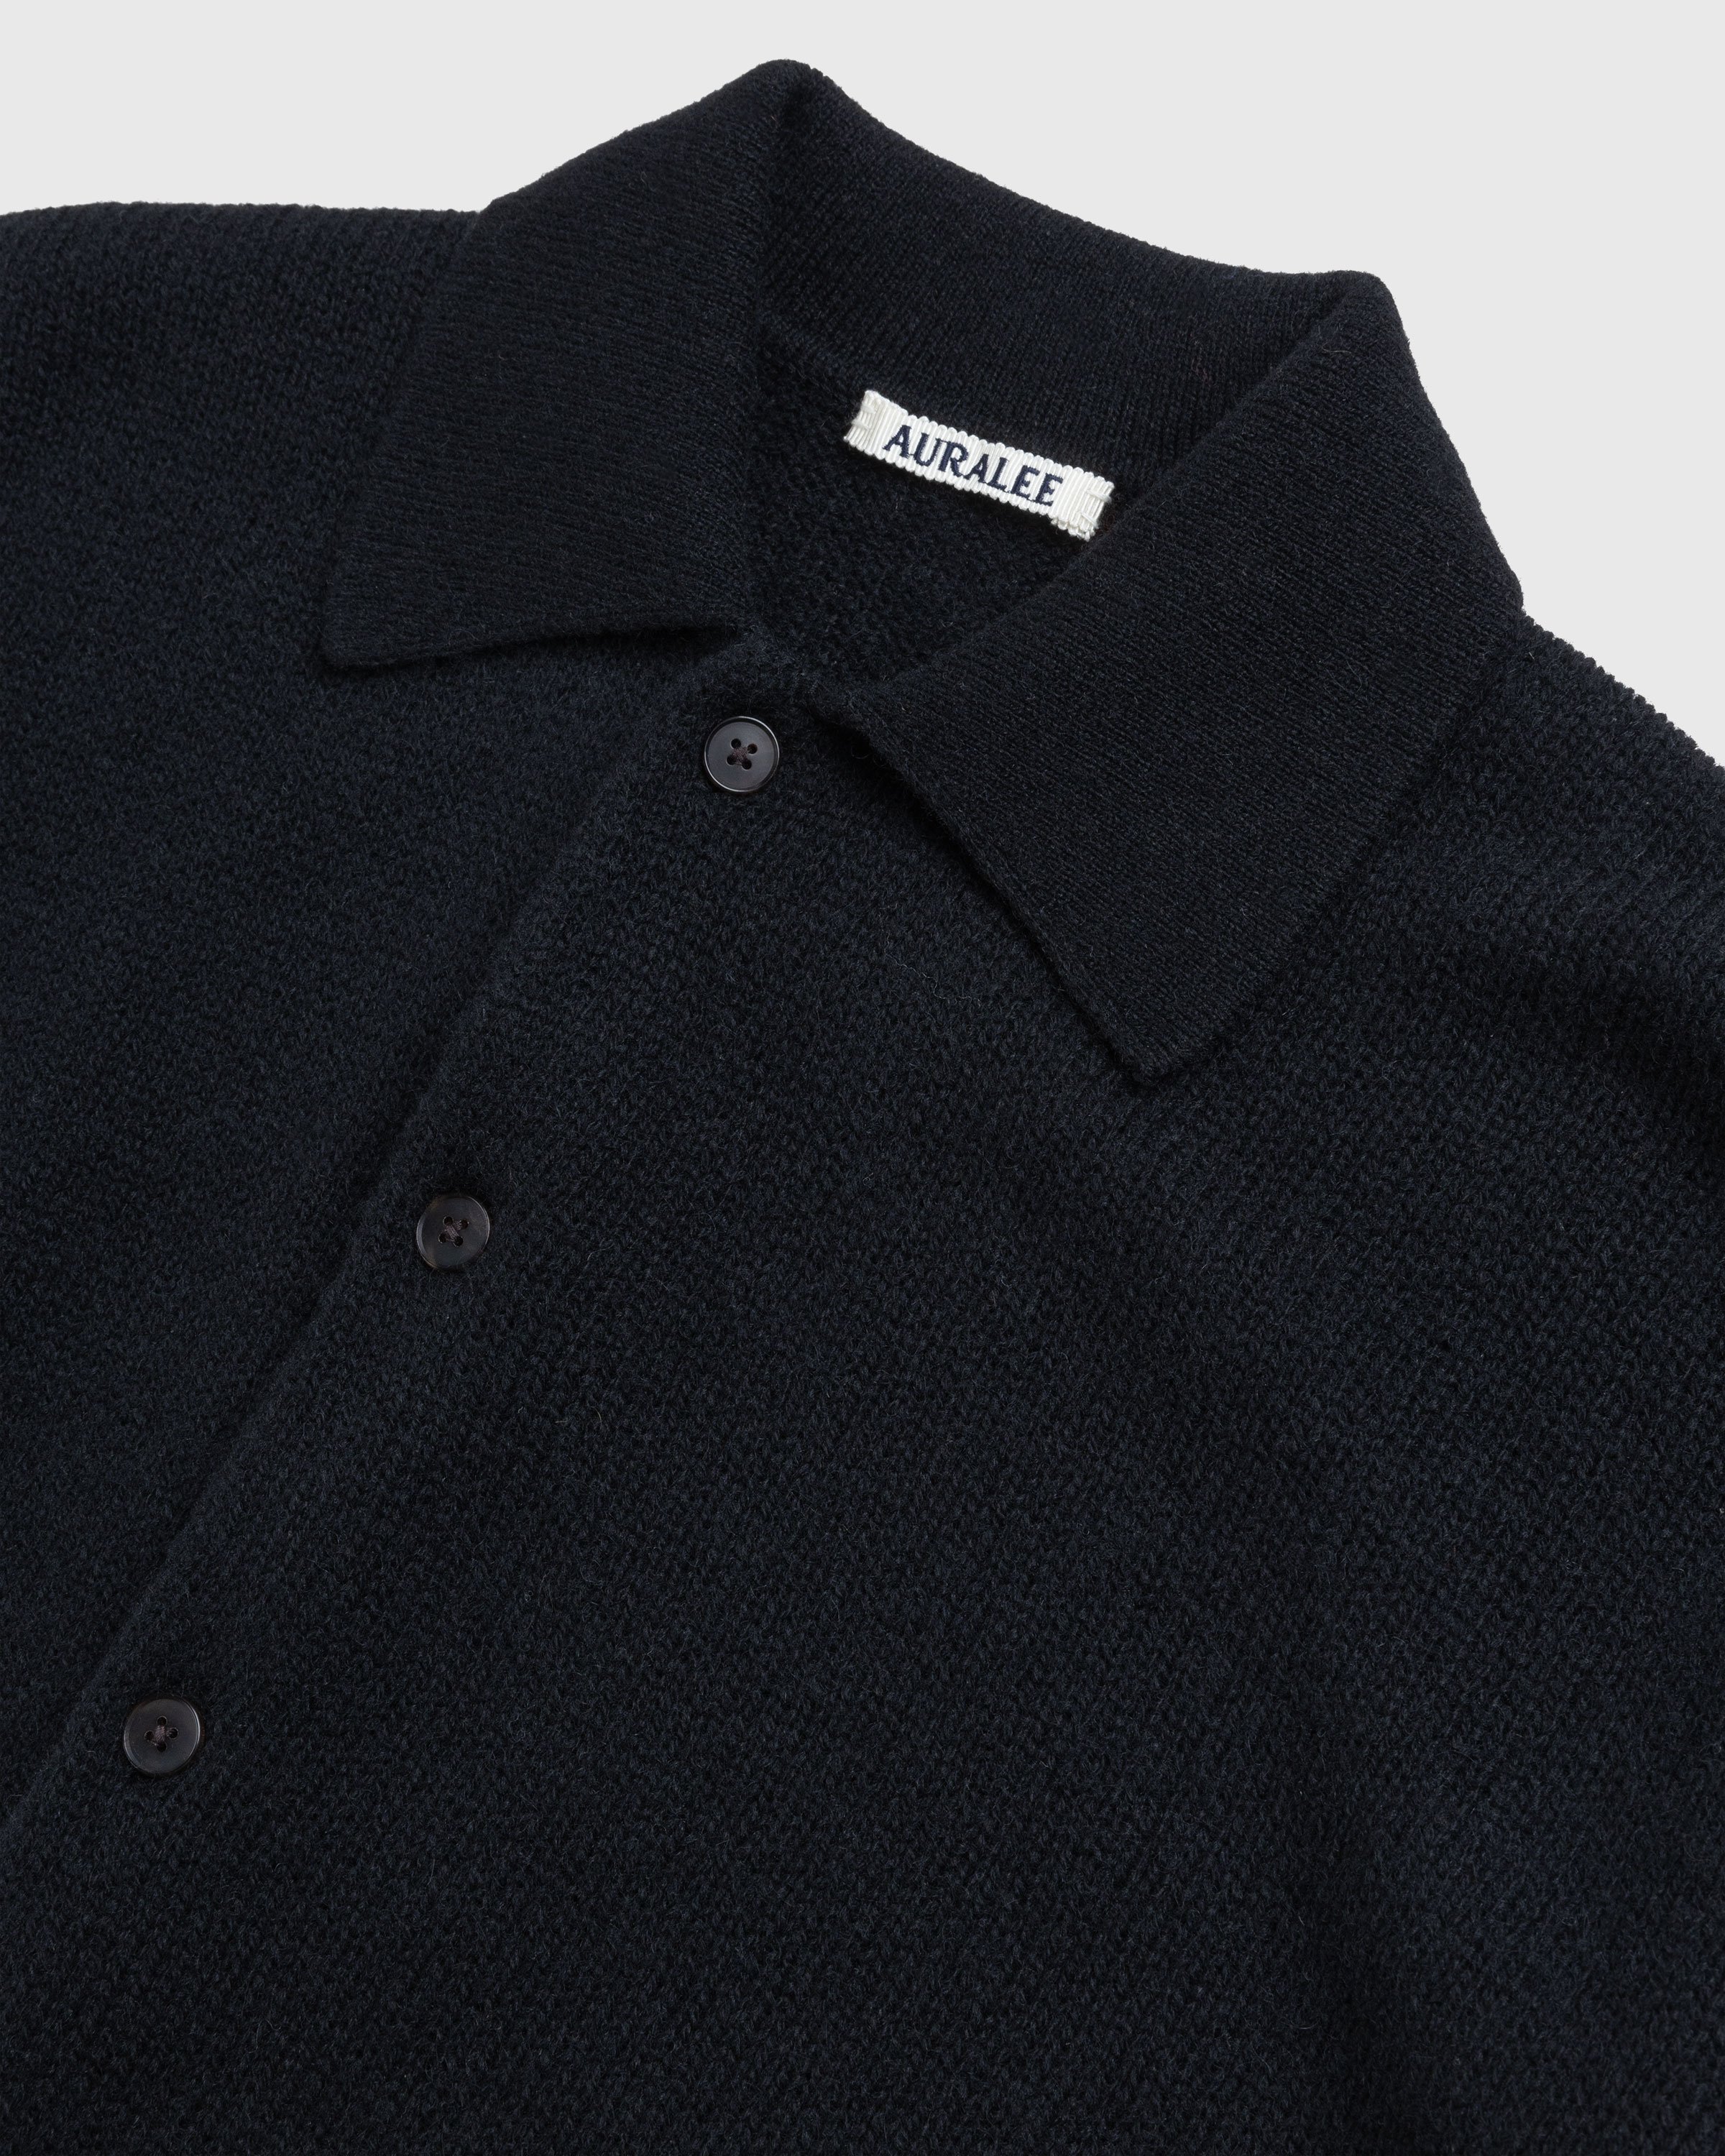 Auralee - Shetland Wool Cashmere Knit Cardigan Black - Clothing - Black - Image 7